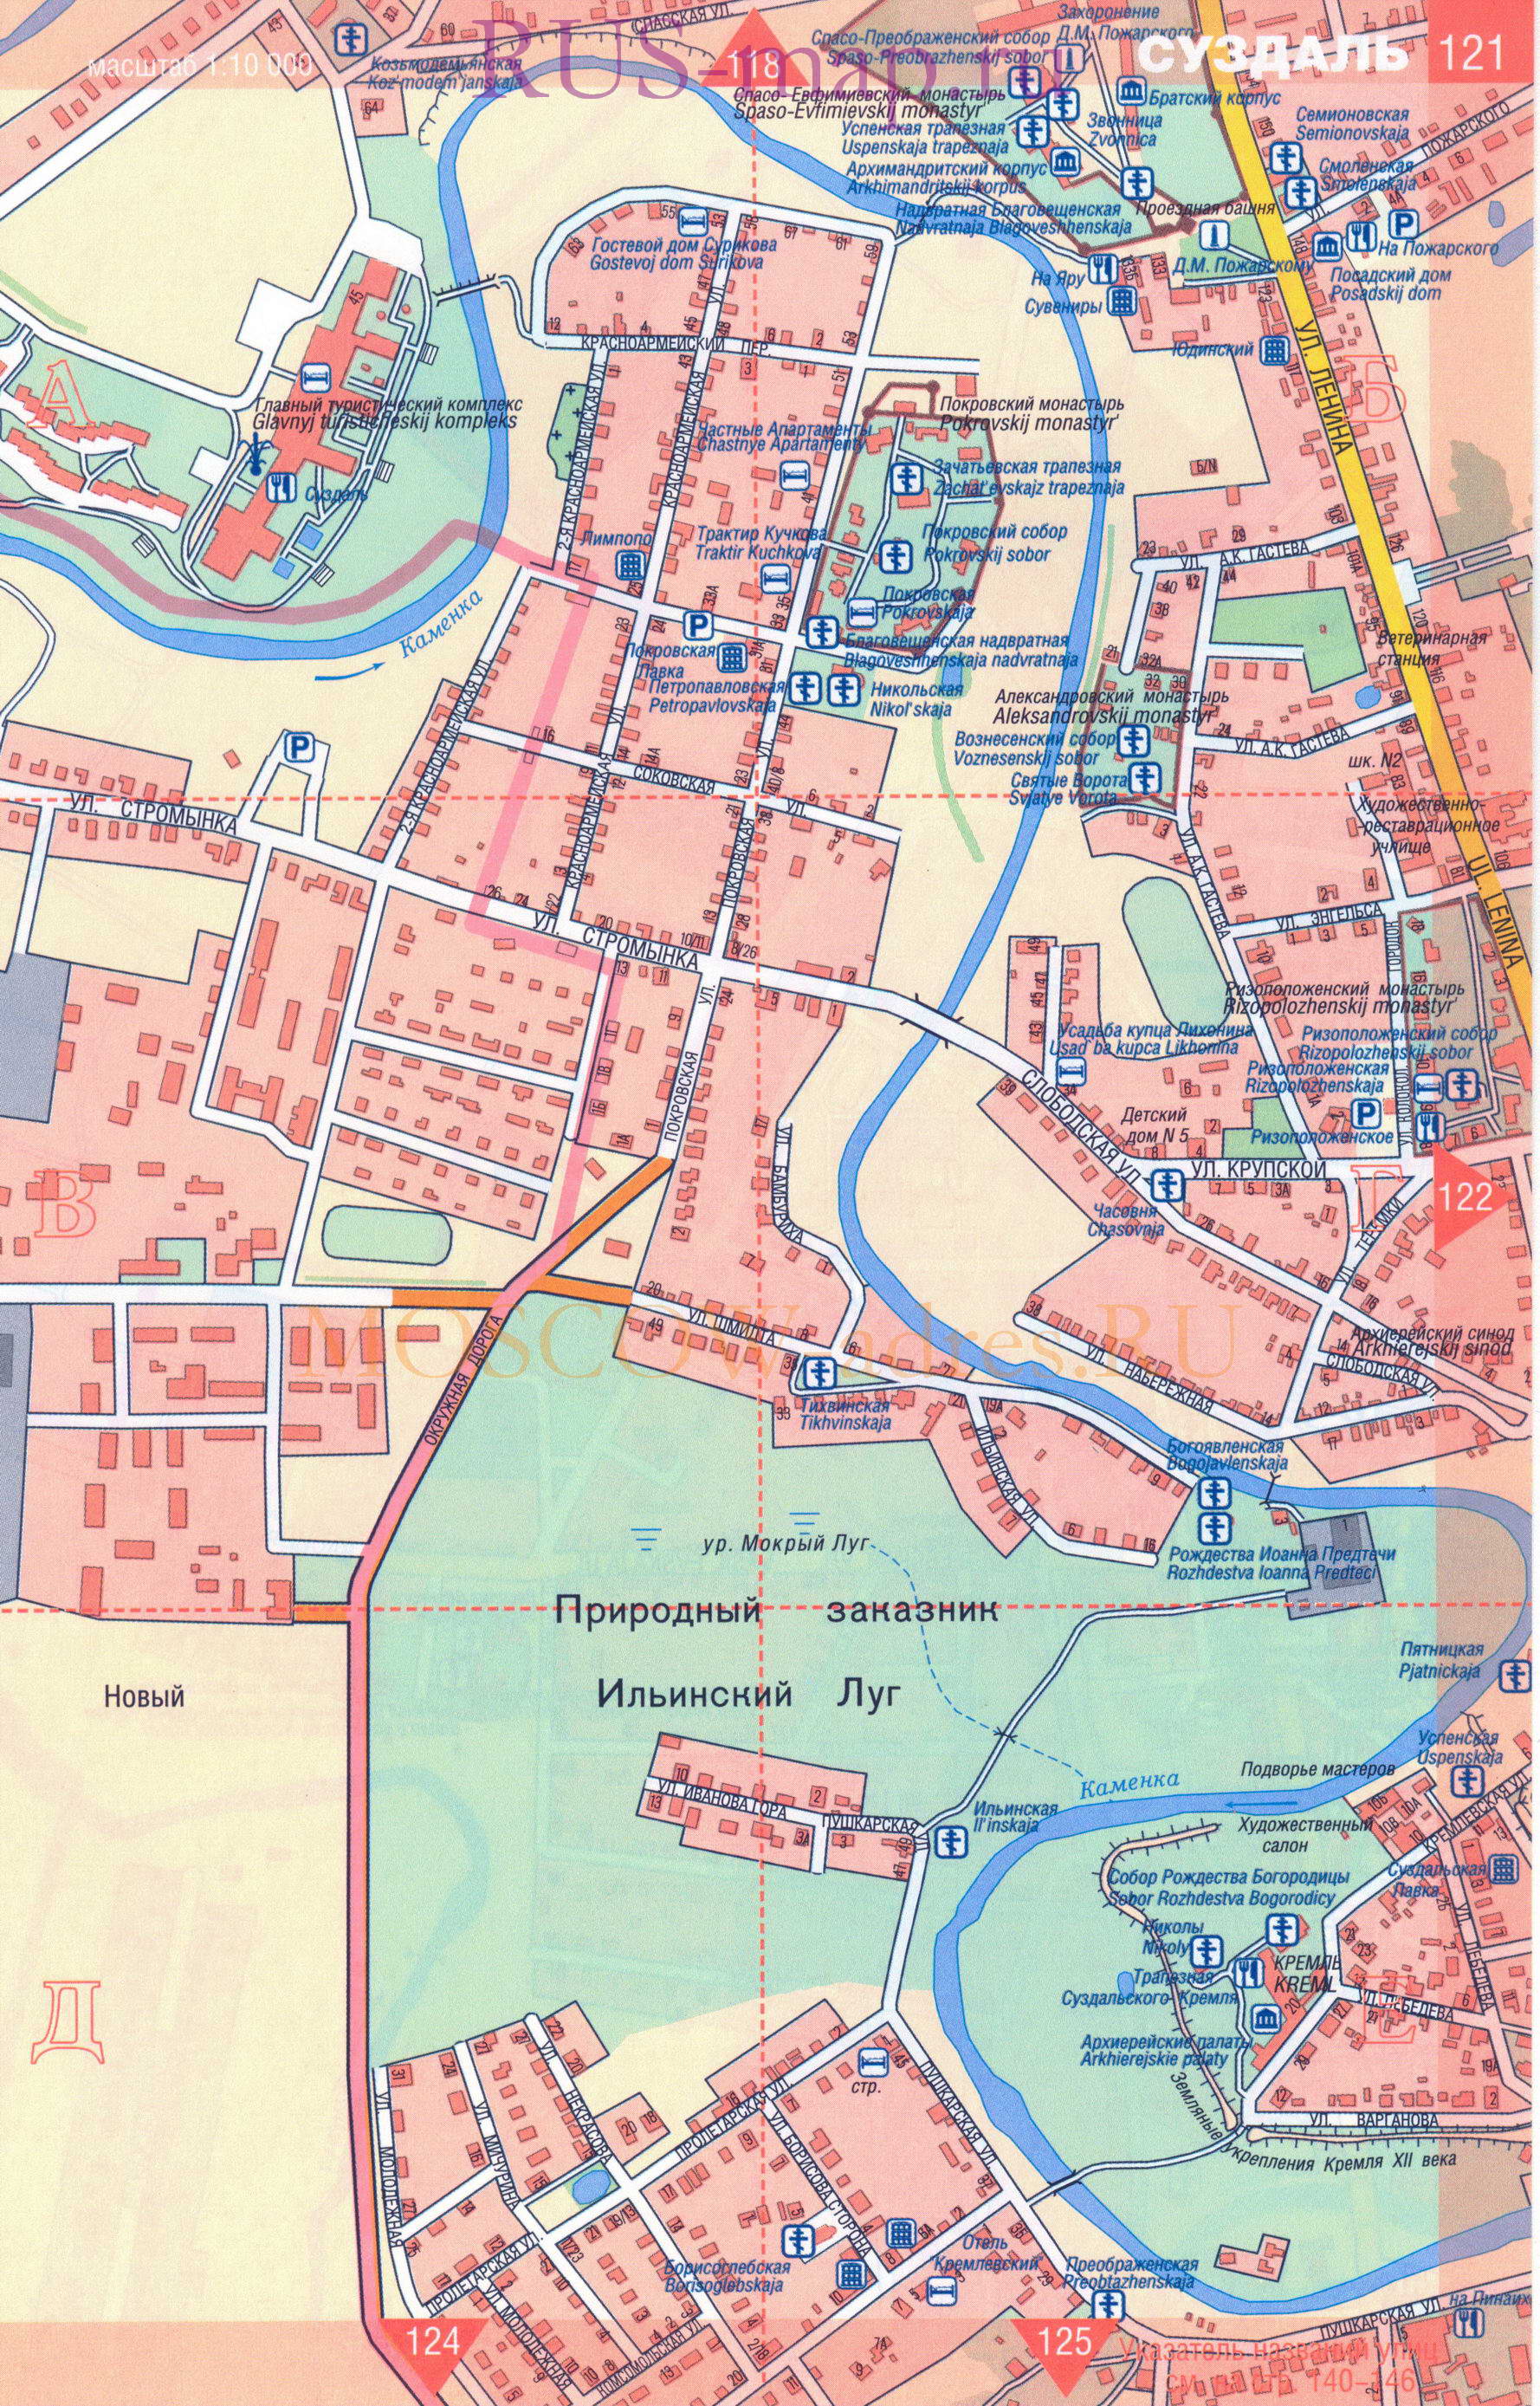 Суздаль. Крупномасштабная карта города Суздаль масштаба 1см:100м, показаны все церкви, музеи, гостиницы, A1 - 